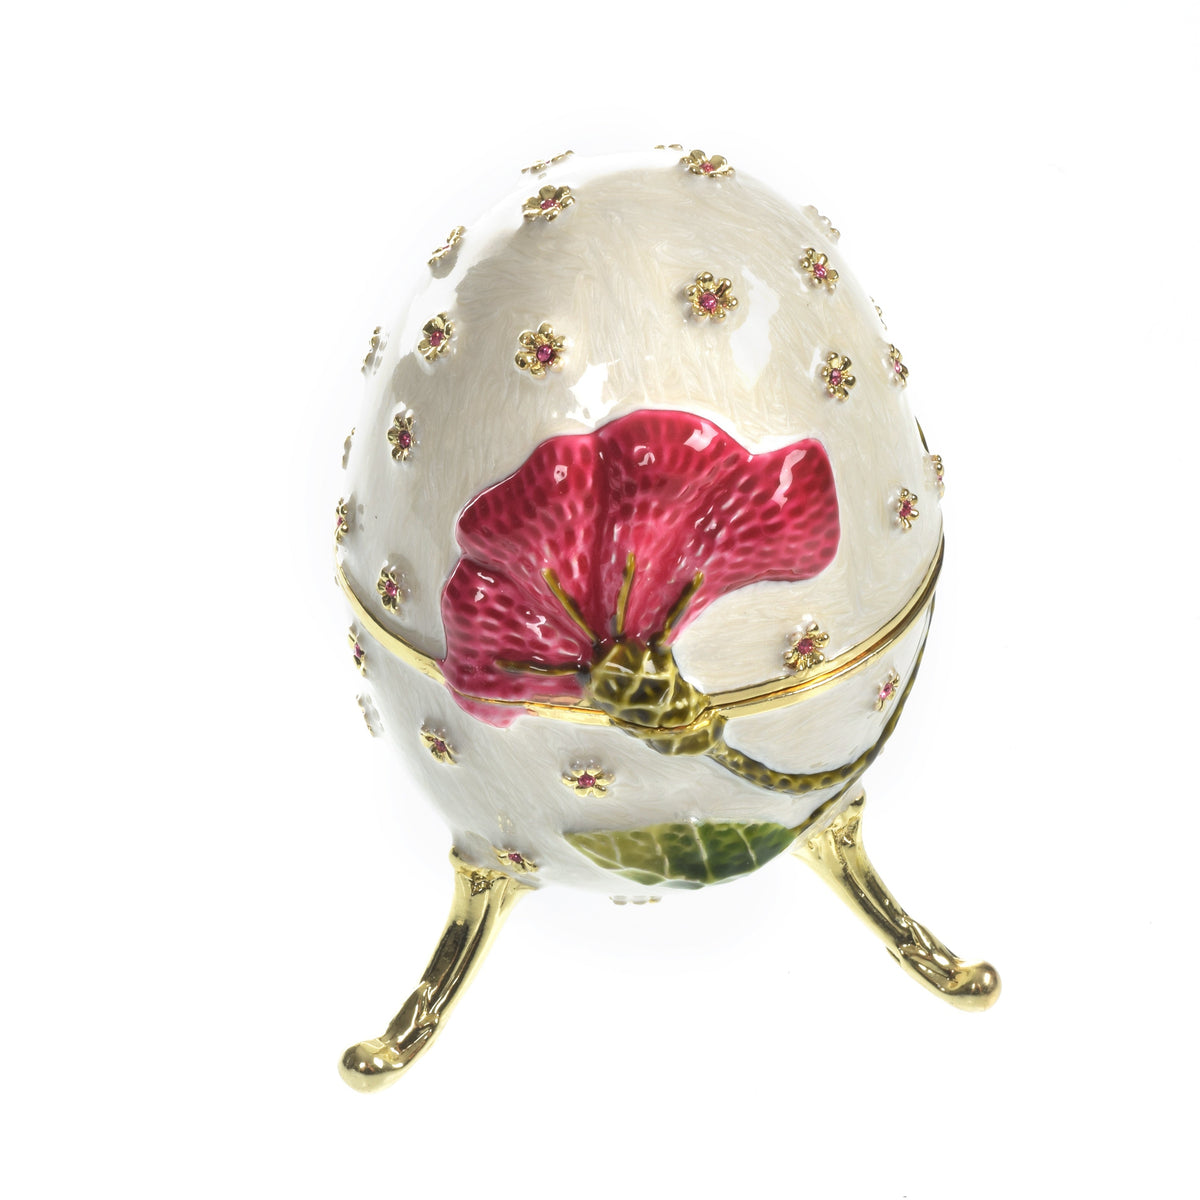 Boîte à musique blanche avec fleur rouge Fur Elise de Beethoven Faberge Egg